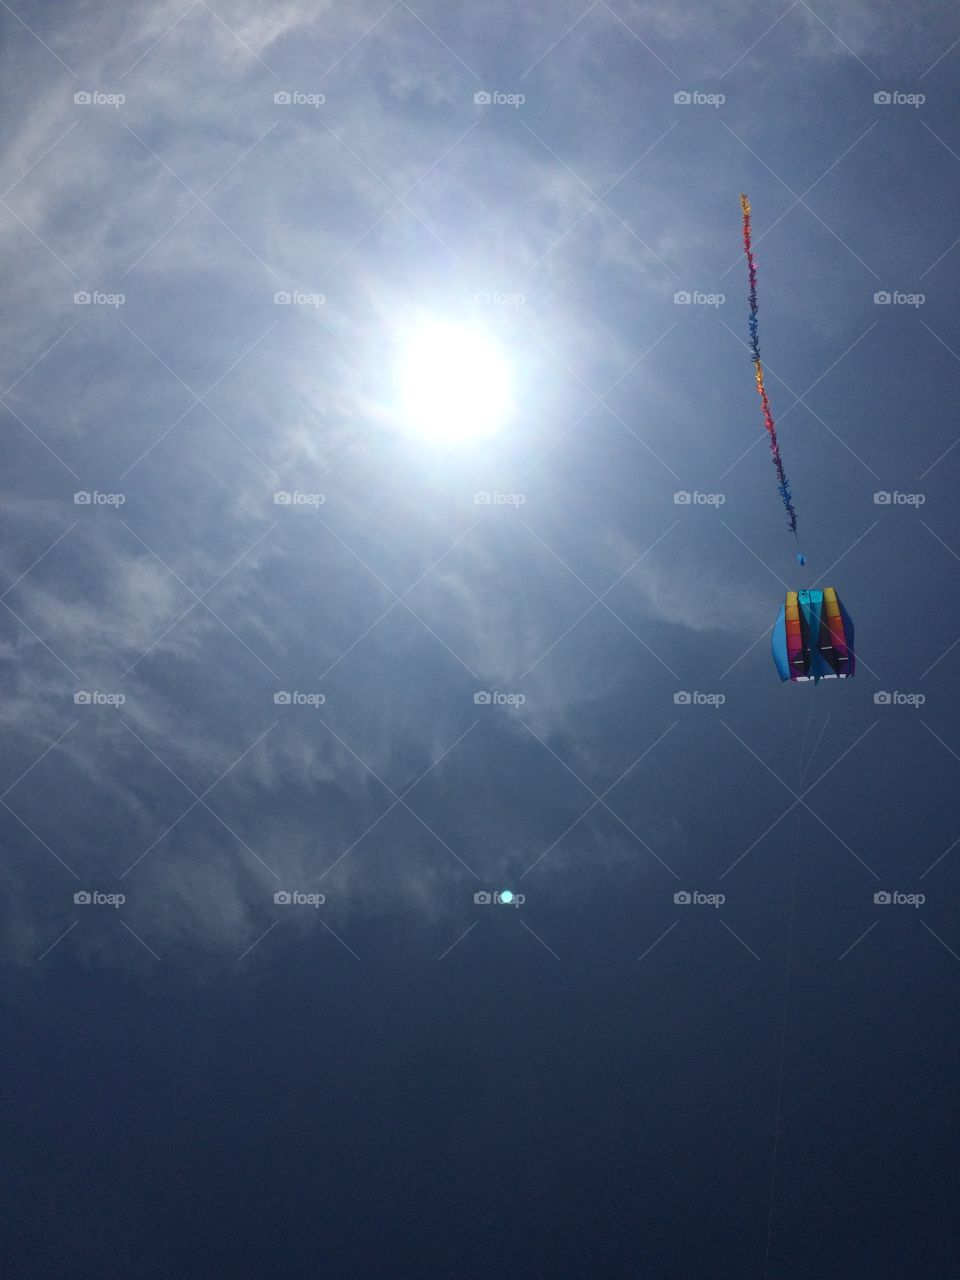 Flying kites in Nantucket. Flying kites in Nantucket